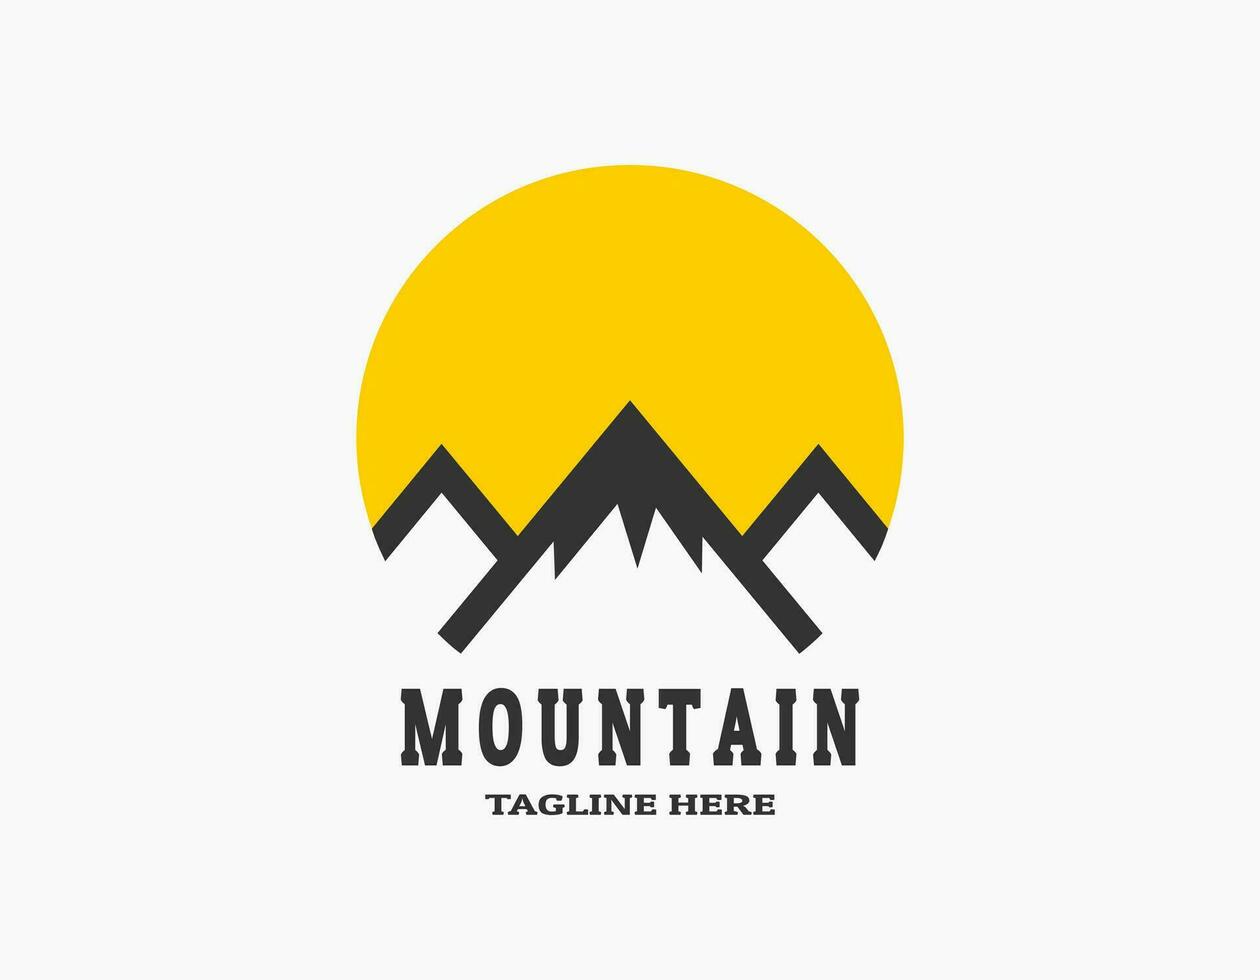 icono logo de Tres montañas con el Dom. logo de el pico de montaña. sencillo circular vector logo en un moderno estilo.